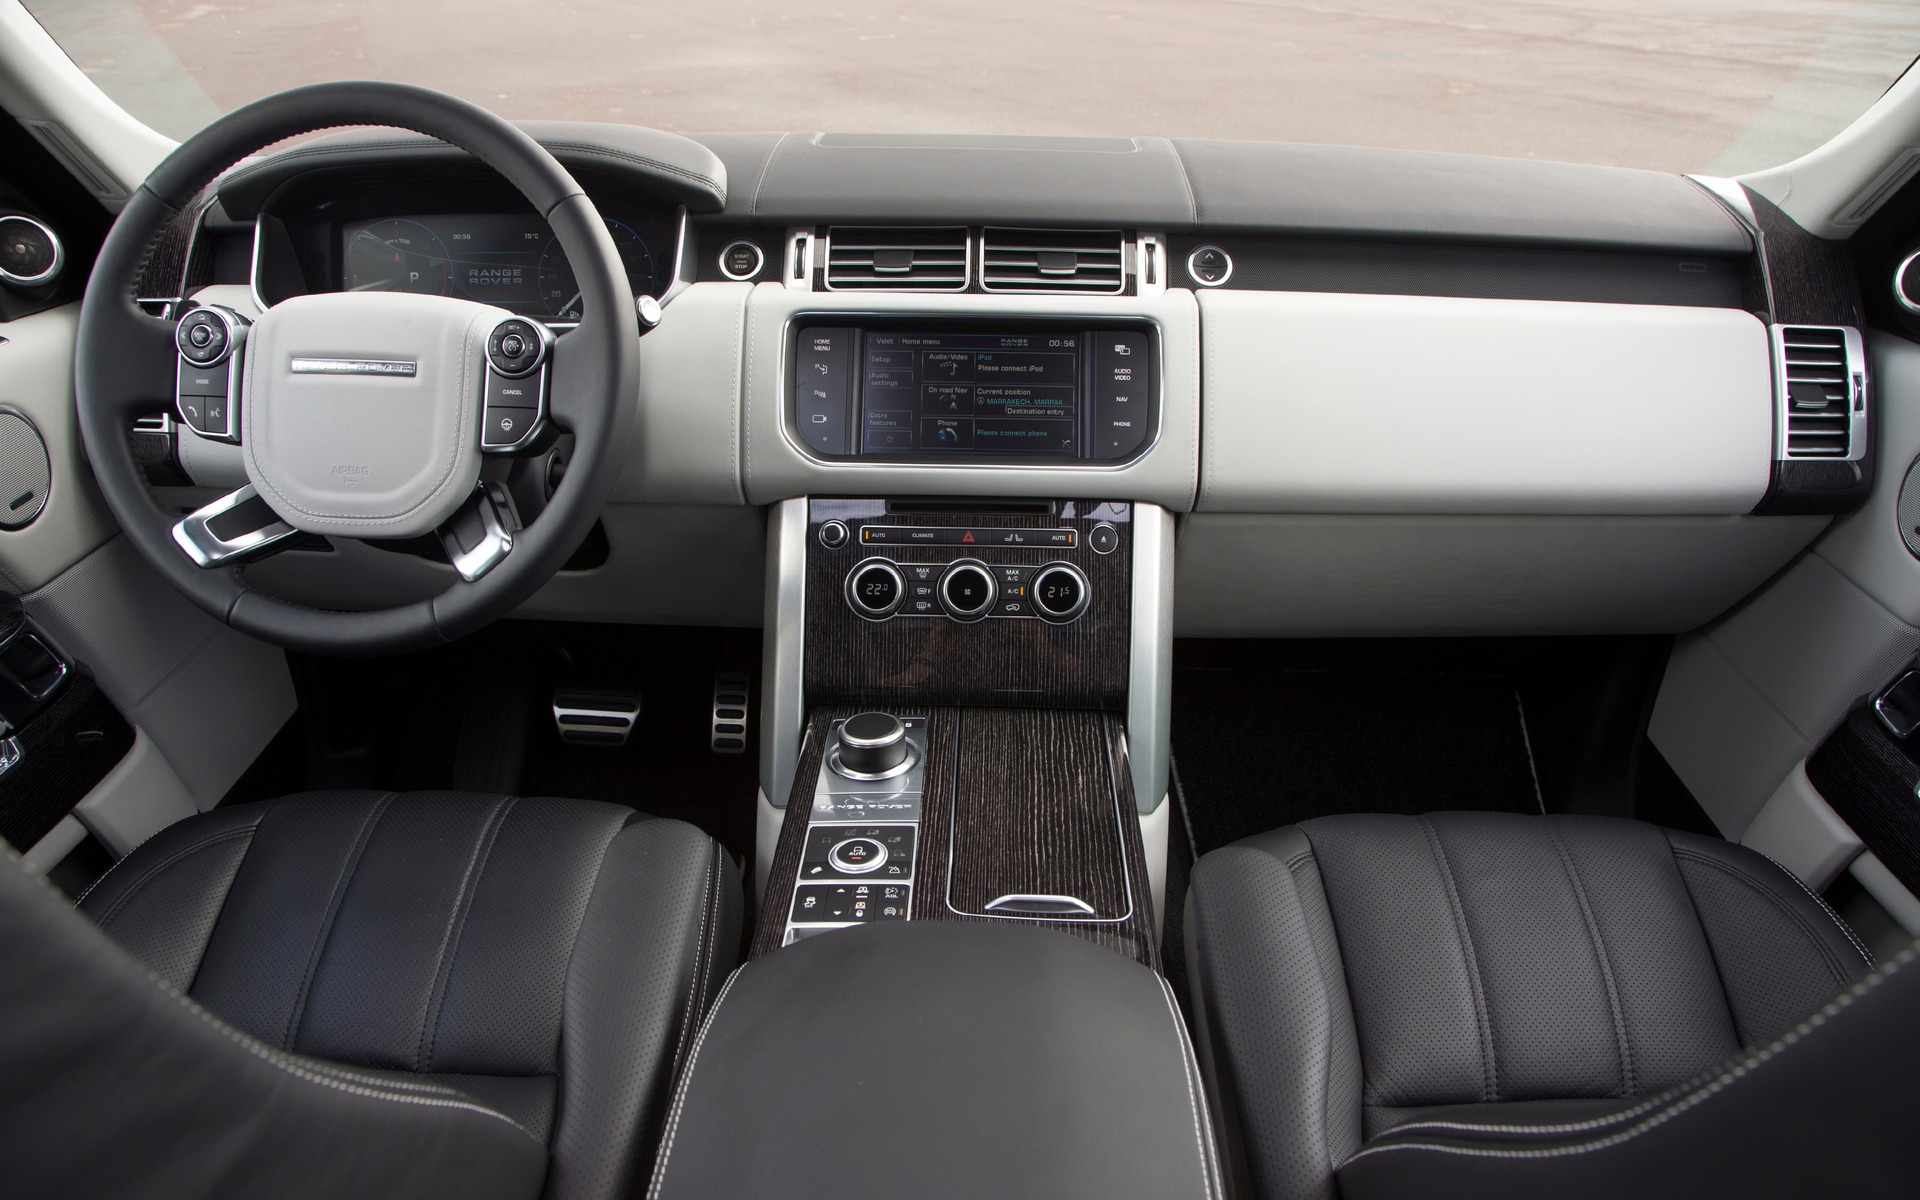 2016 Range Rover HSE Td6